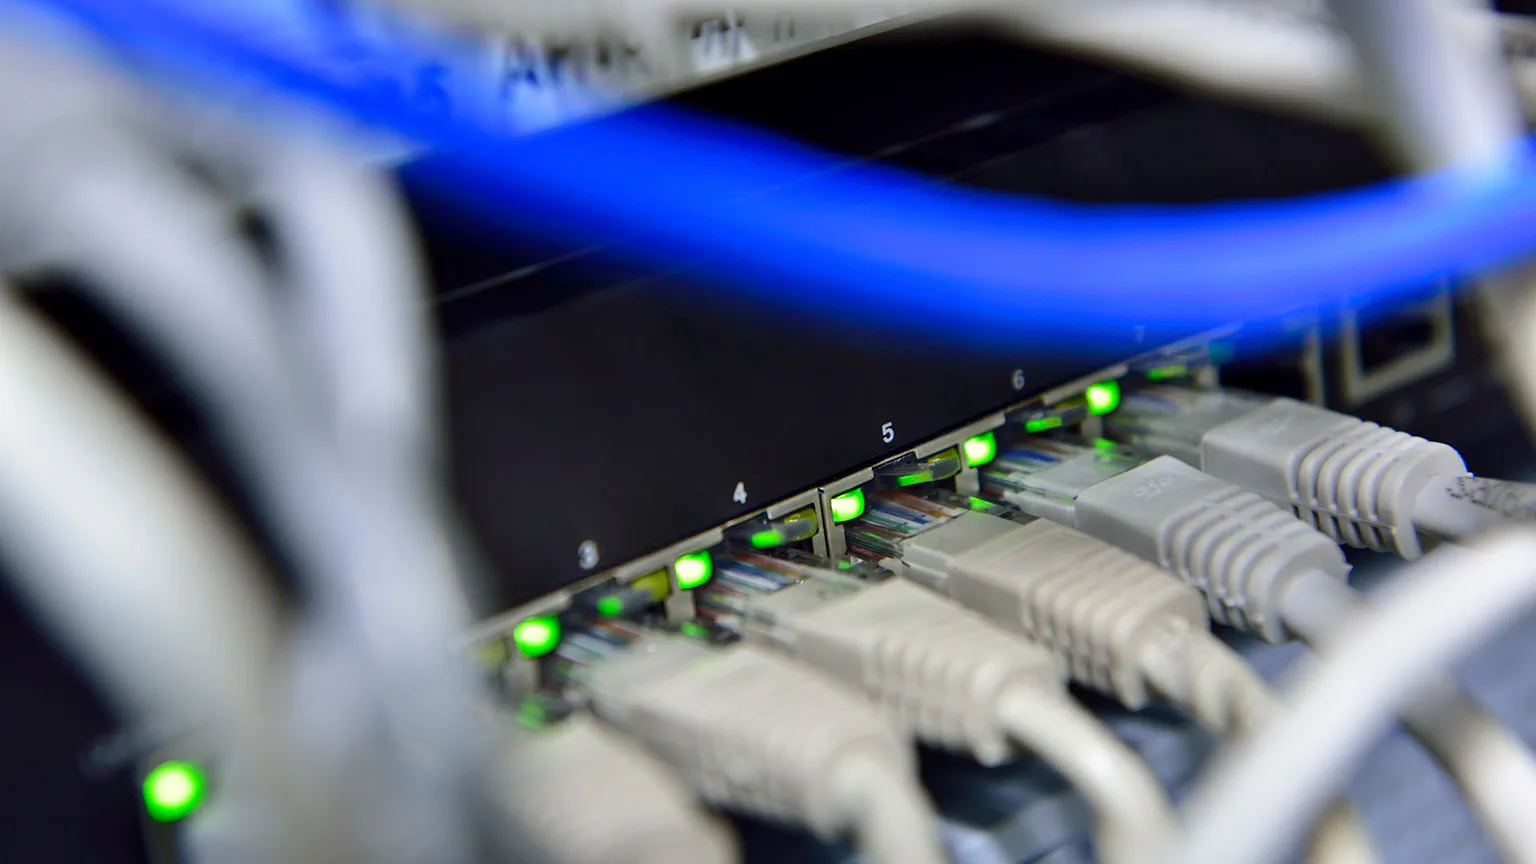 Mehrere angeschlossene Netzwerkkabel. Insbesondere sind ein blaues Kabel und grüne Leuchten zu erkennen.